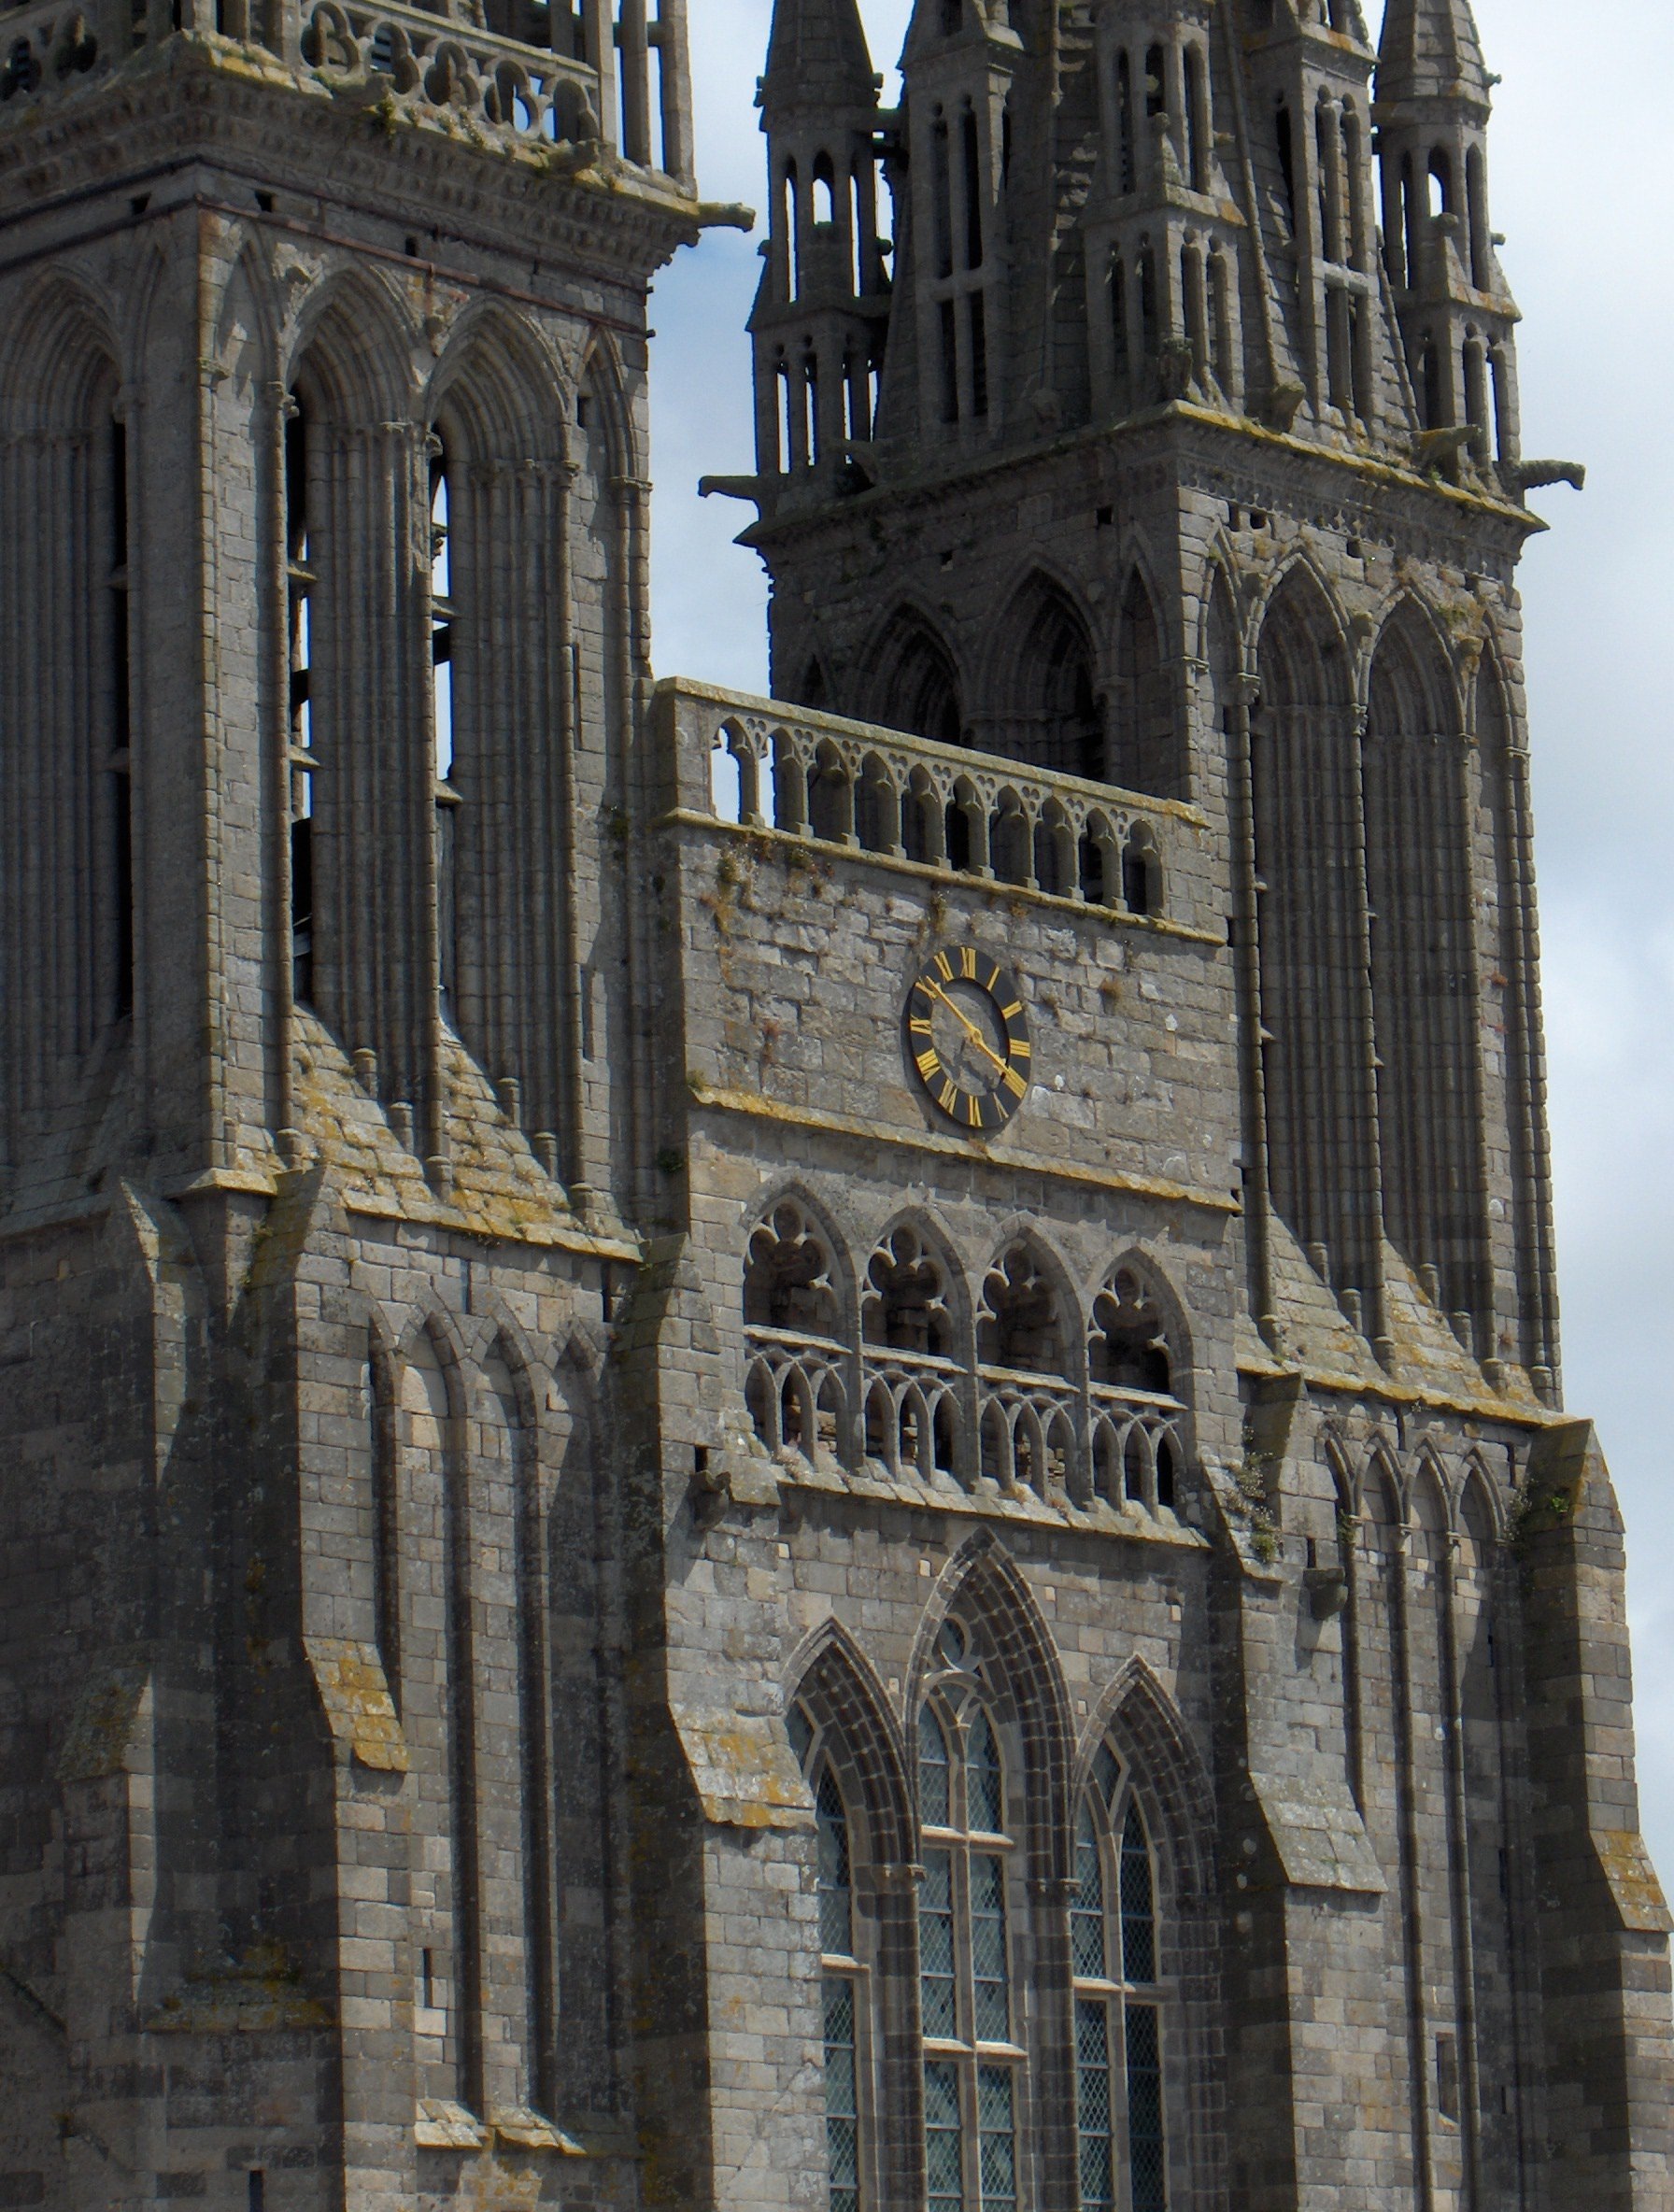 Façade d'une cathédrale gothique en granit, avec une horloge noire à chiffres et aiguilles dorés